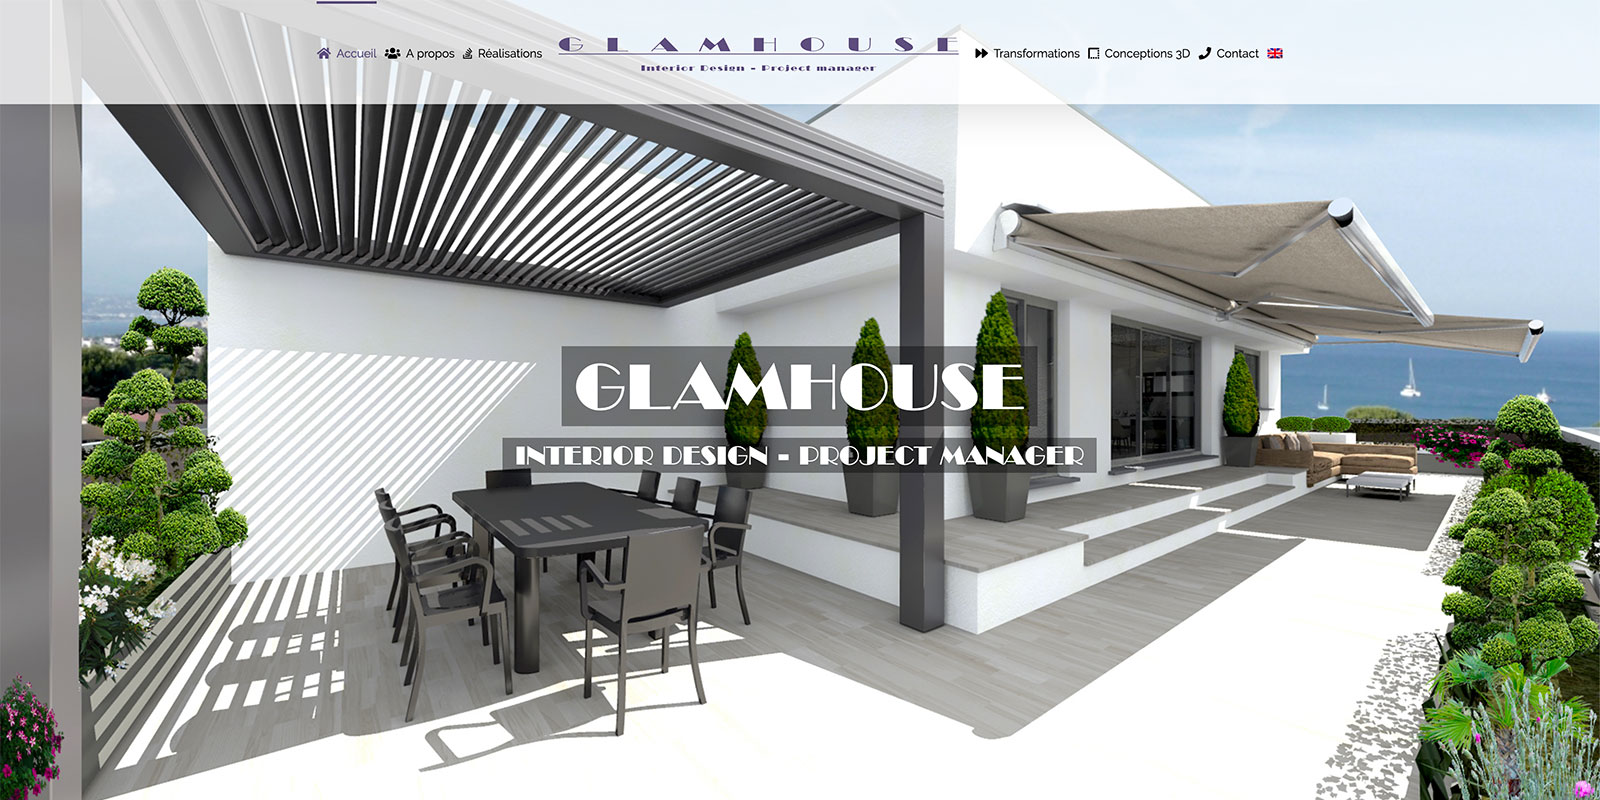 Référence - Glamhouse : interior design, project manager - Netcom Agency - Communication numérique